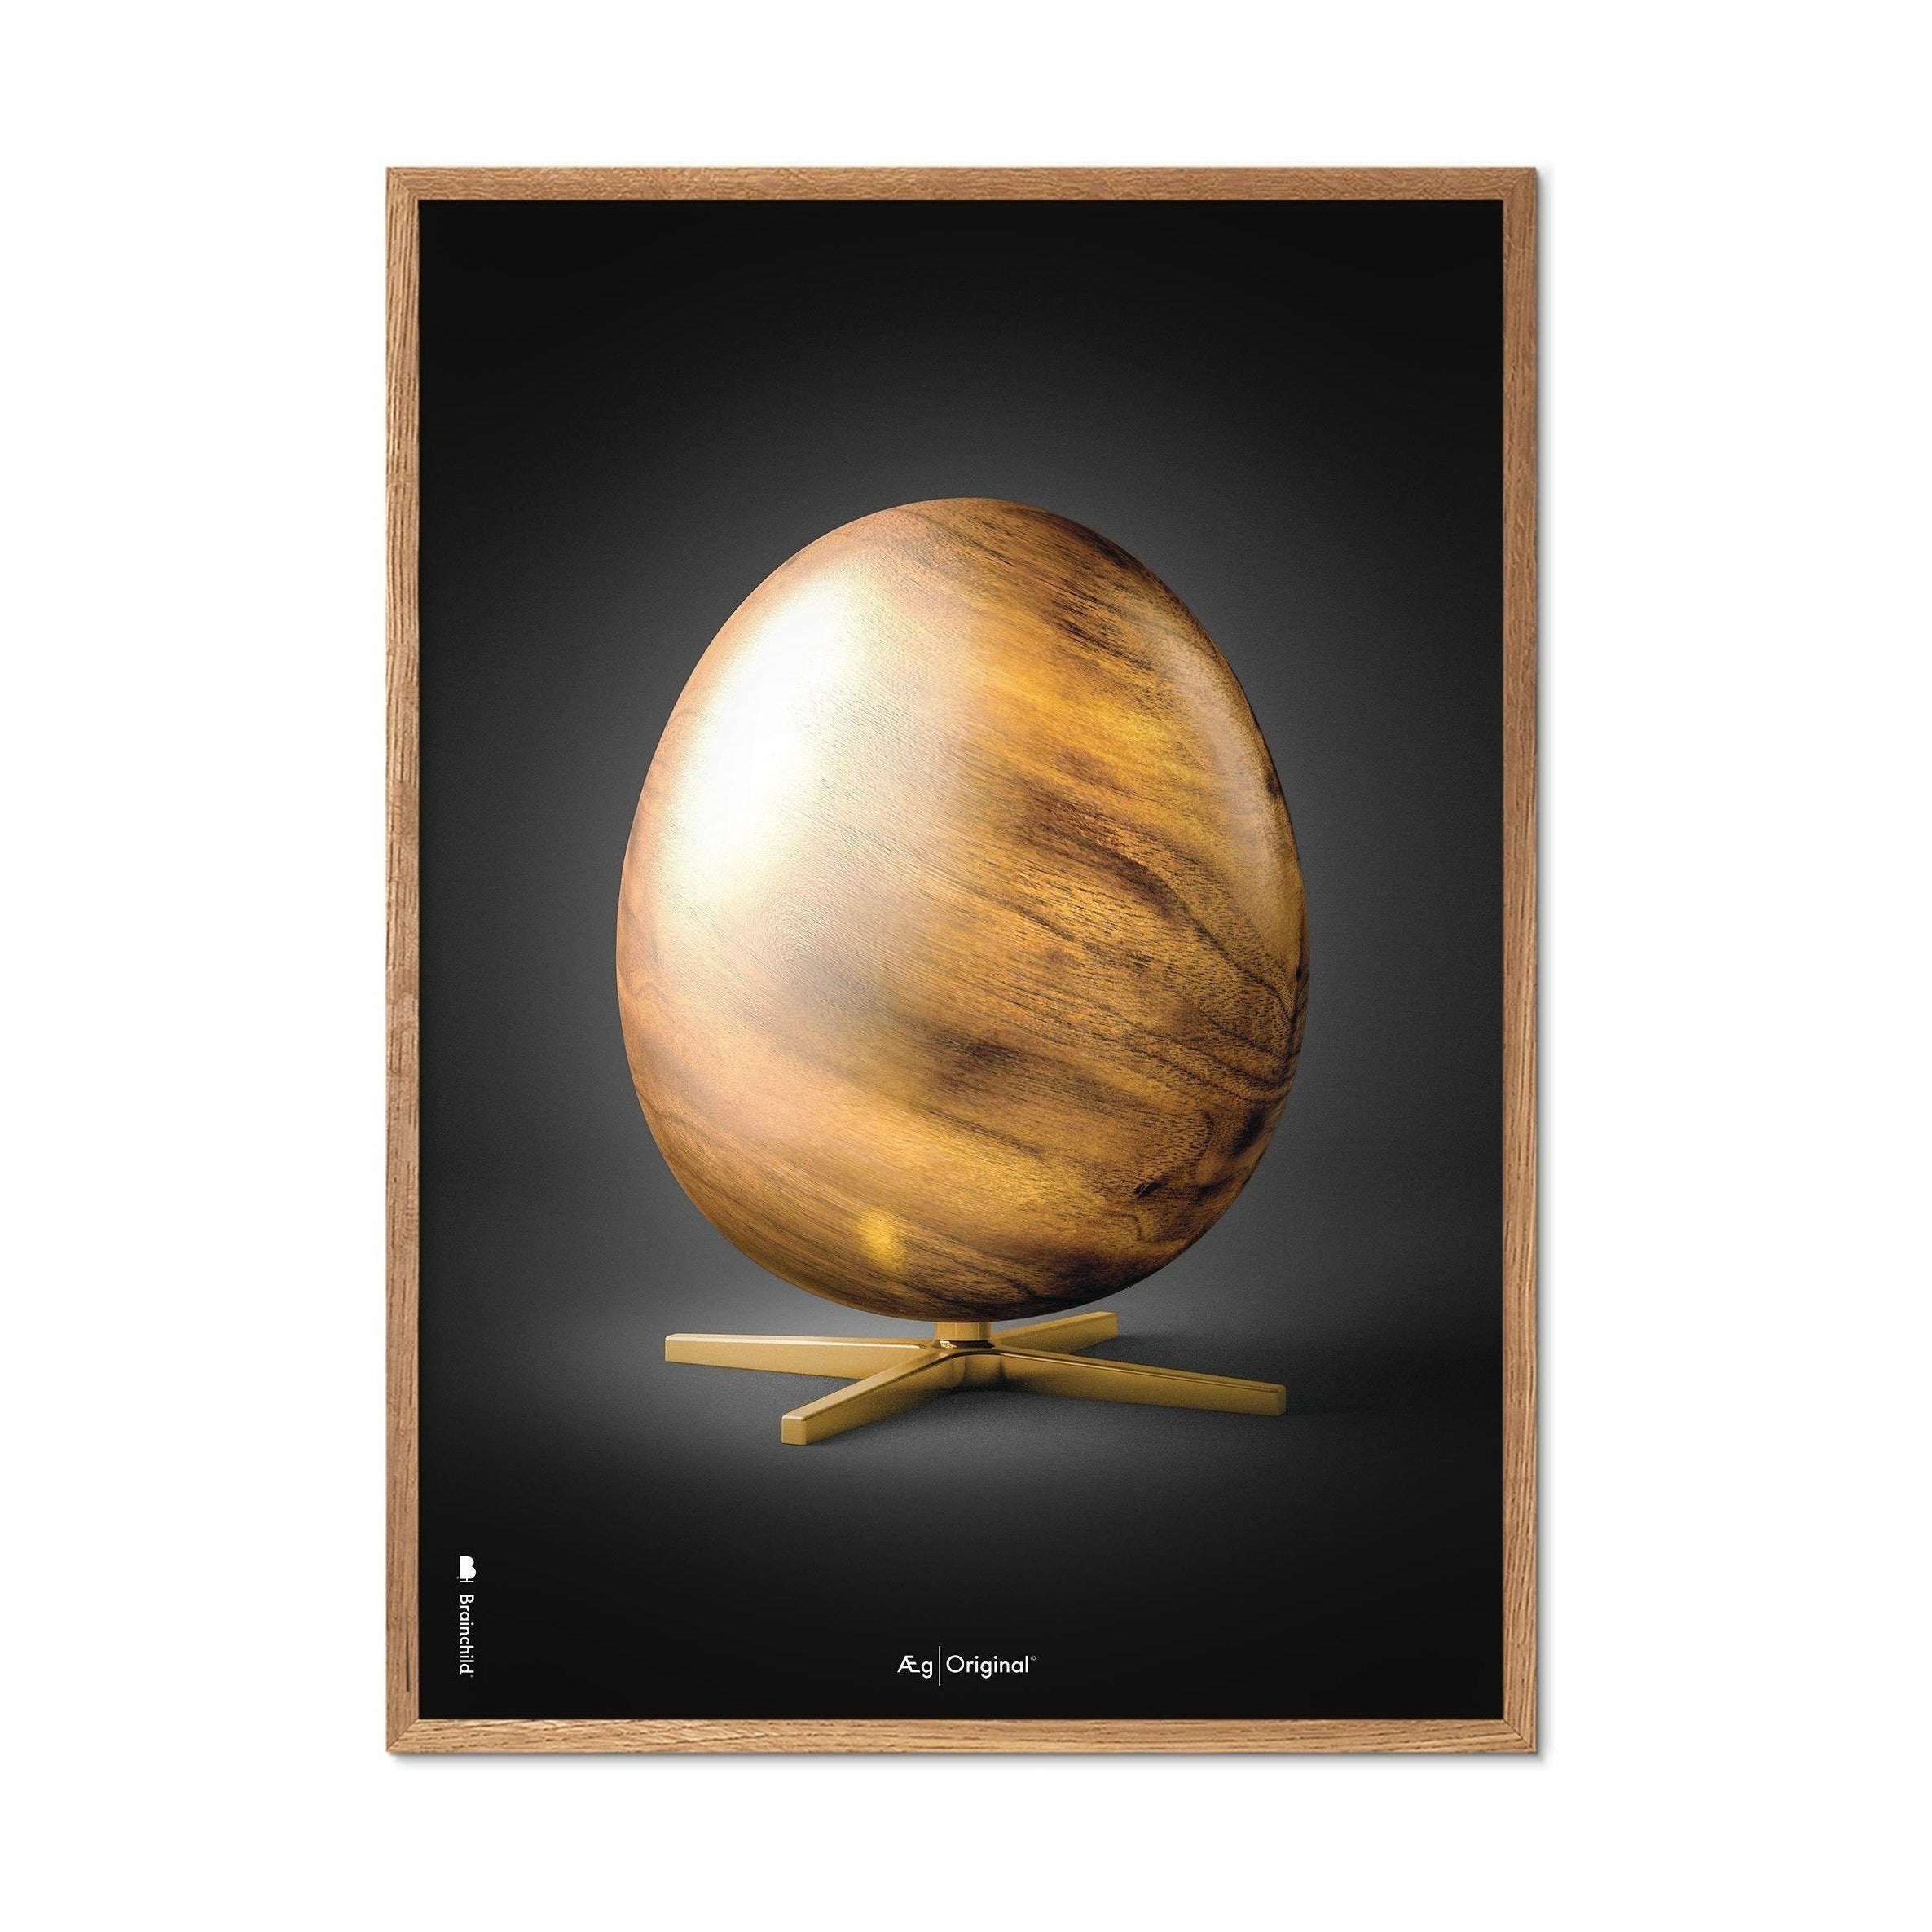 Brainchild Egg Figures Poster, Frame Made Of Light Wood 30x40 Cm, Black